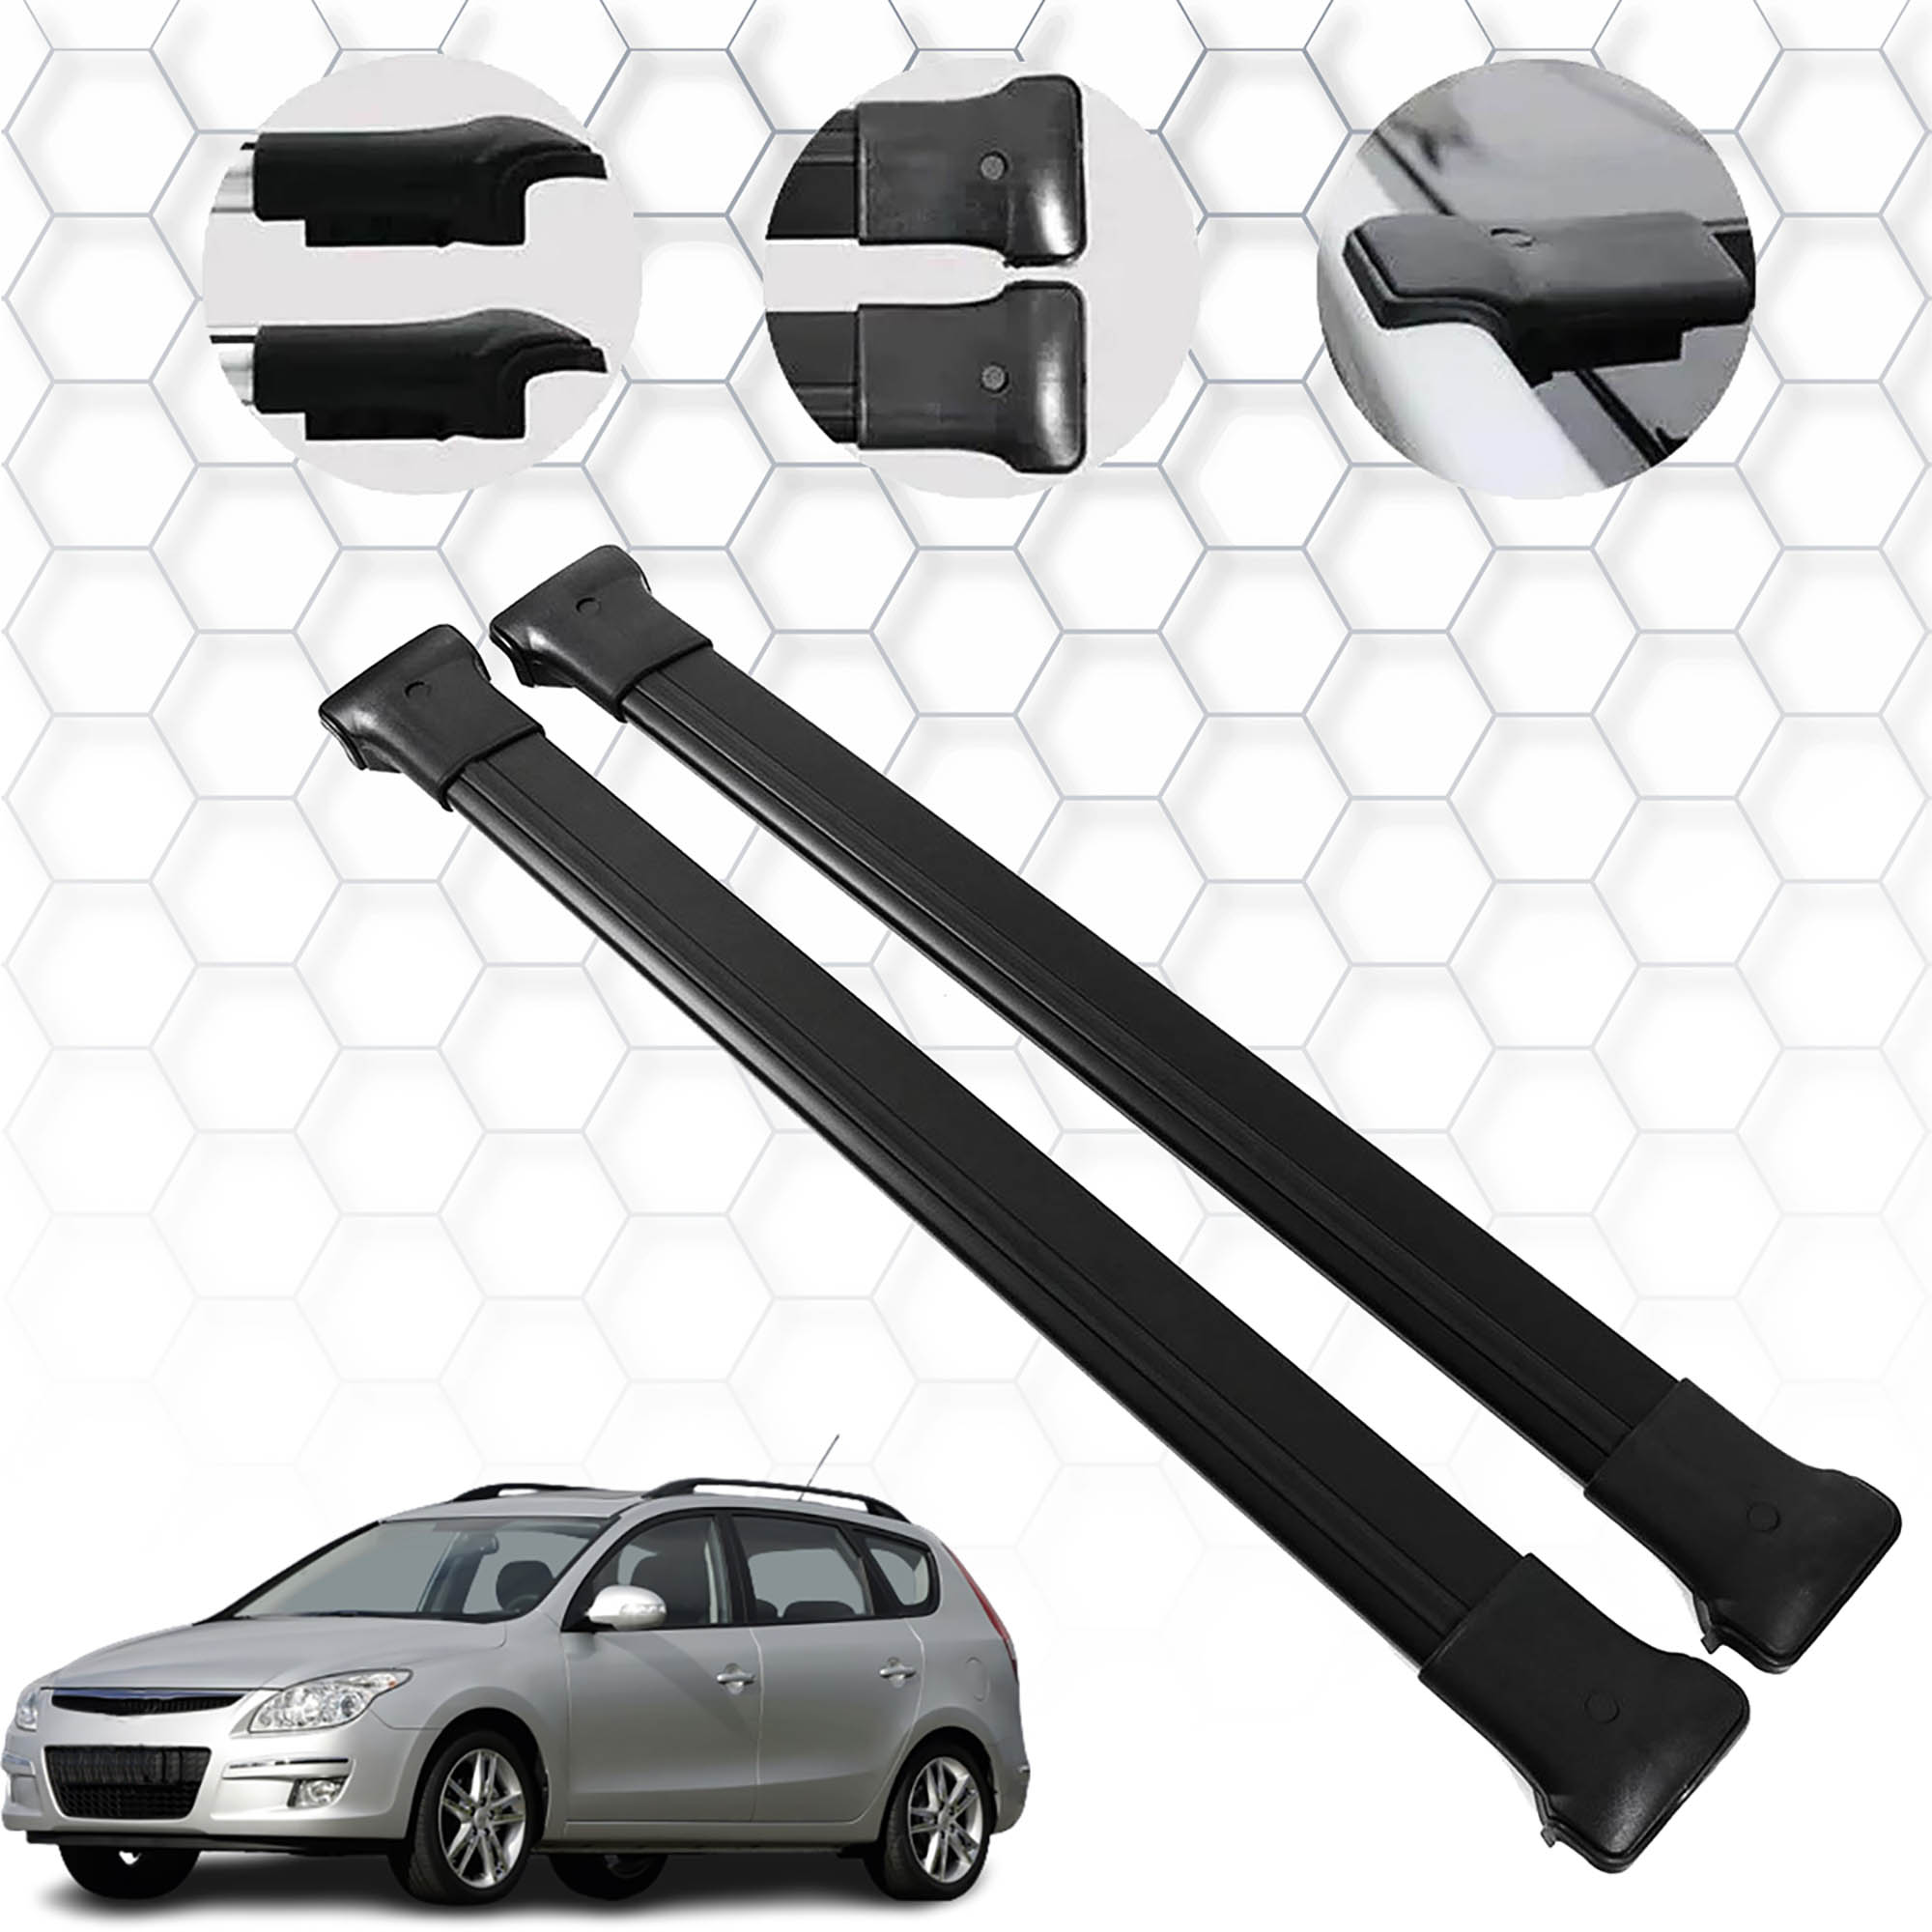 Hyundai İ30 (2002-2010) - Ara Atkı - Elegance V1 - (2 Parça Aluminyum) - (SW-Siyah)